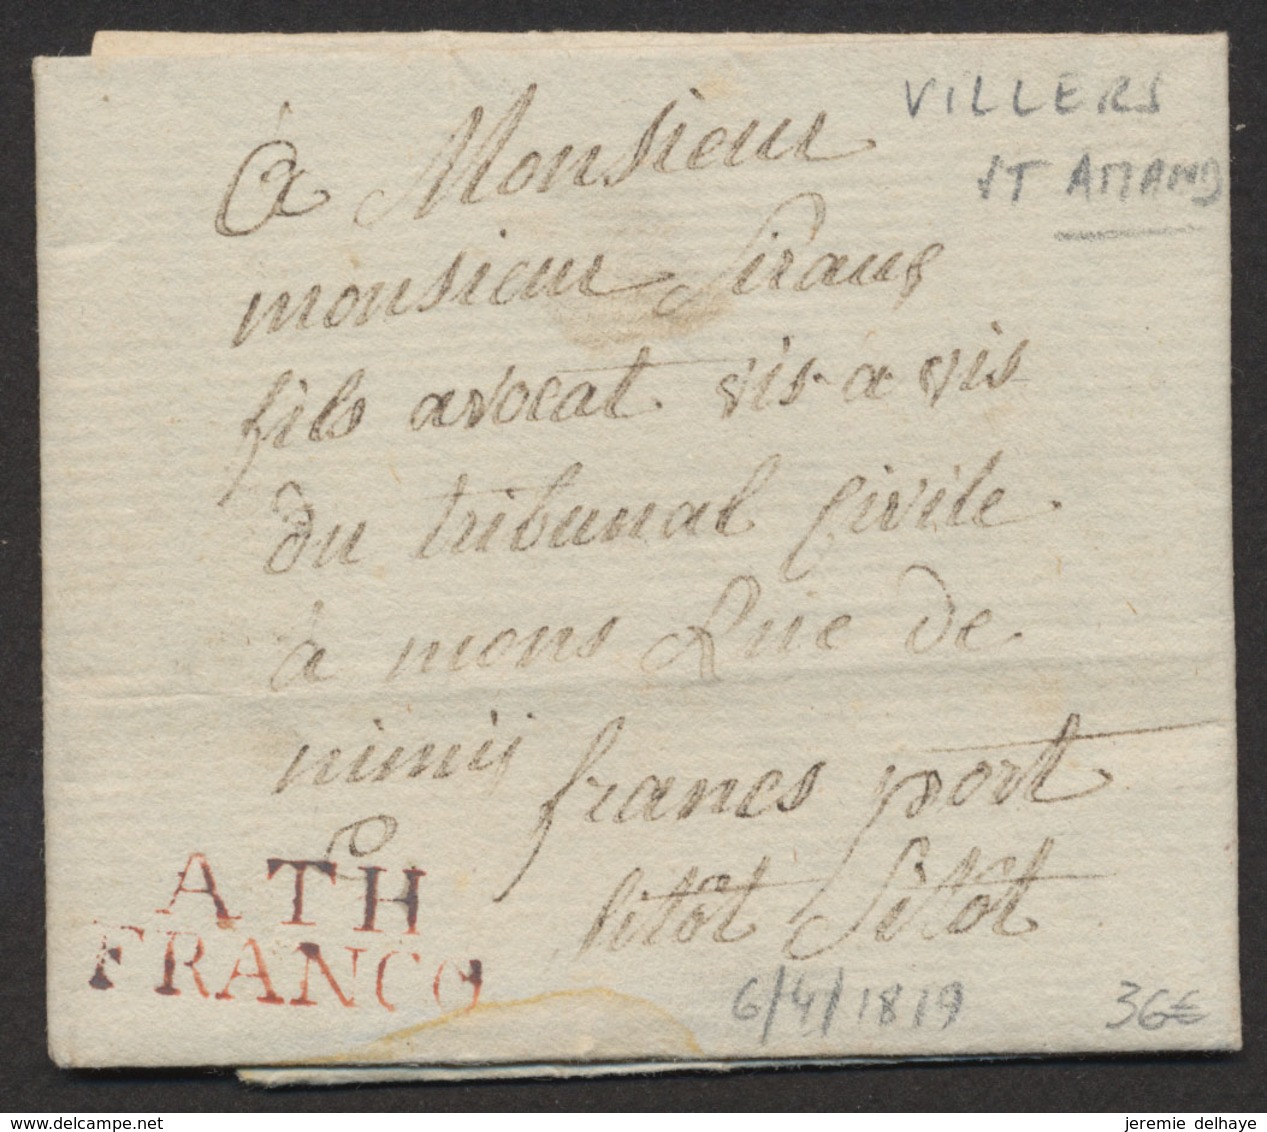 LAC Datée De Villers-St-Amand (1819) + Obl Linéaire ATH / FRANCO, Manusc. "Franc Port" Et "Sitot Sitot" > Mons - 1815-1830 (Dutch Period)